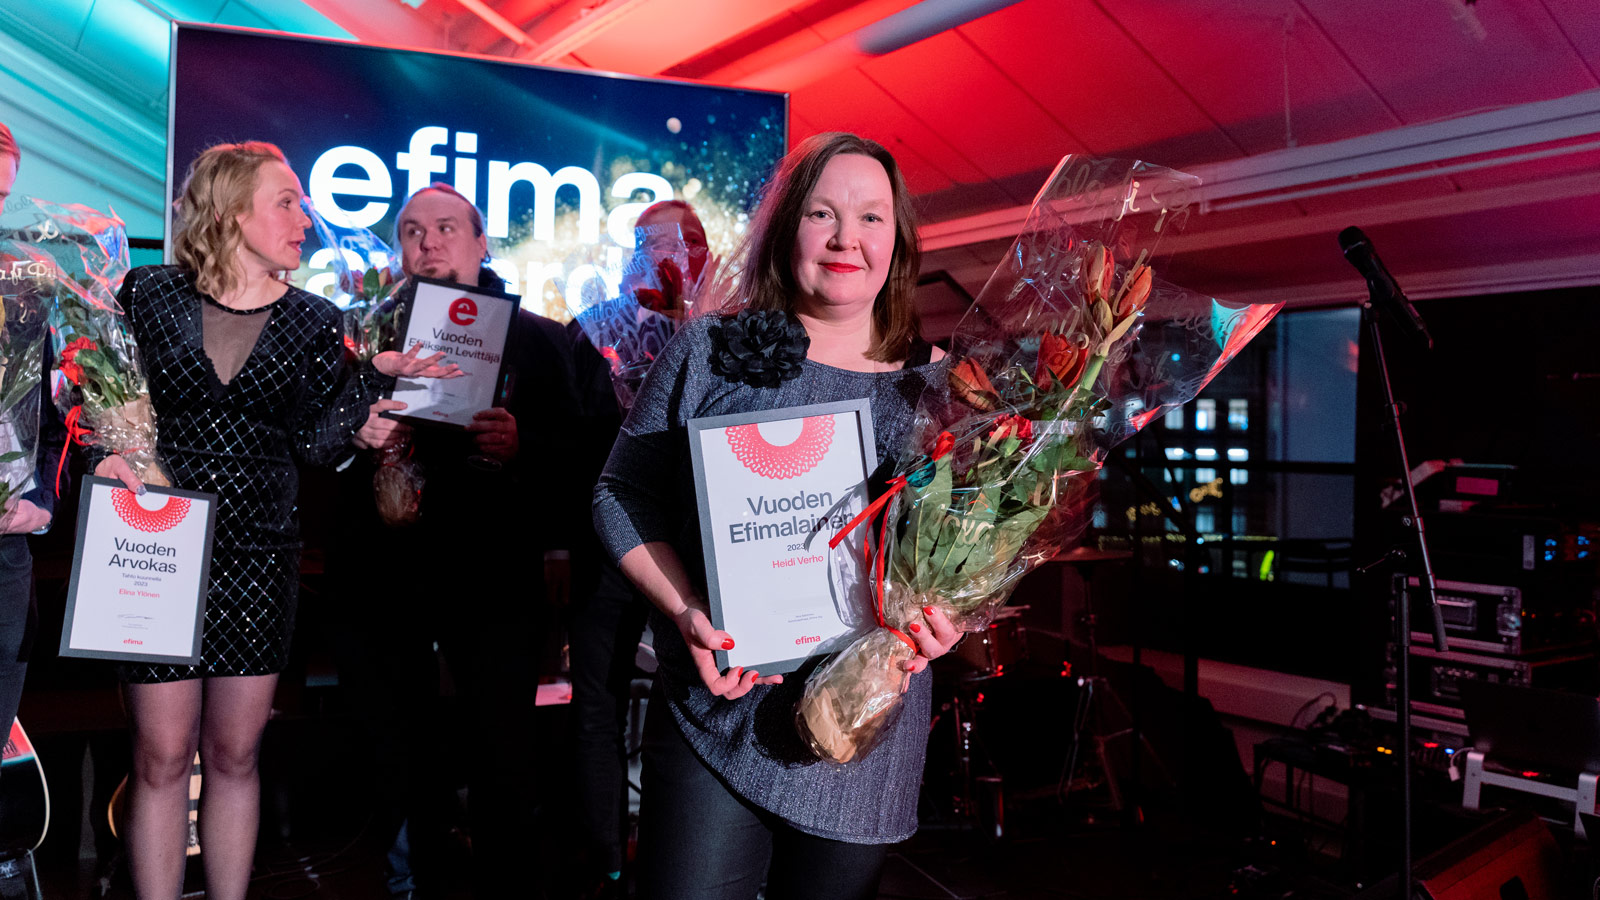 Vuoden-efimalainen-Heidi-web-1 Vuoden efimalaiseksi palkittu Heidi kollegoineen palkinnonjaon jälkeisissä tunnelmissa